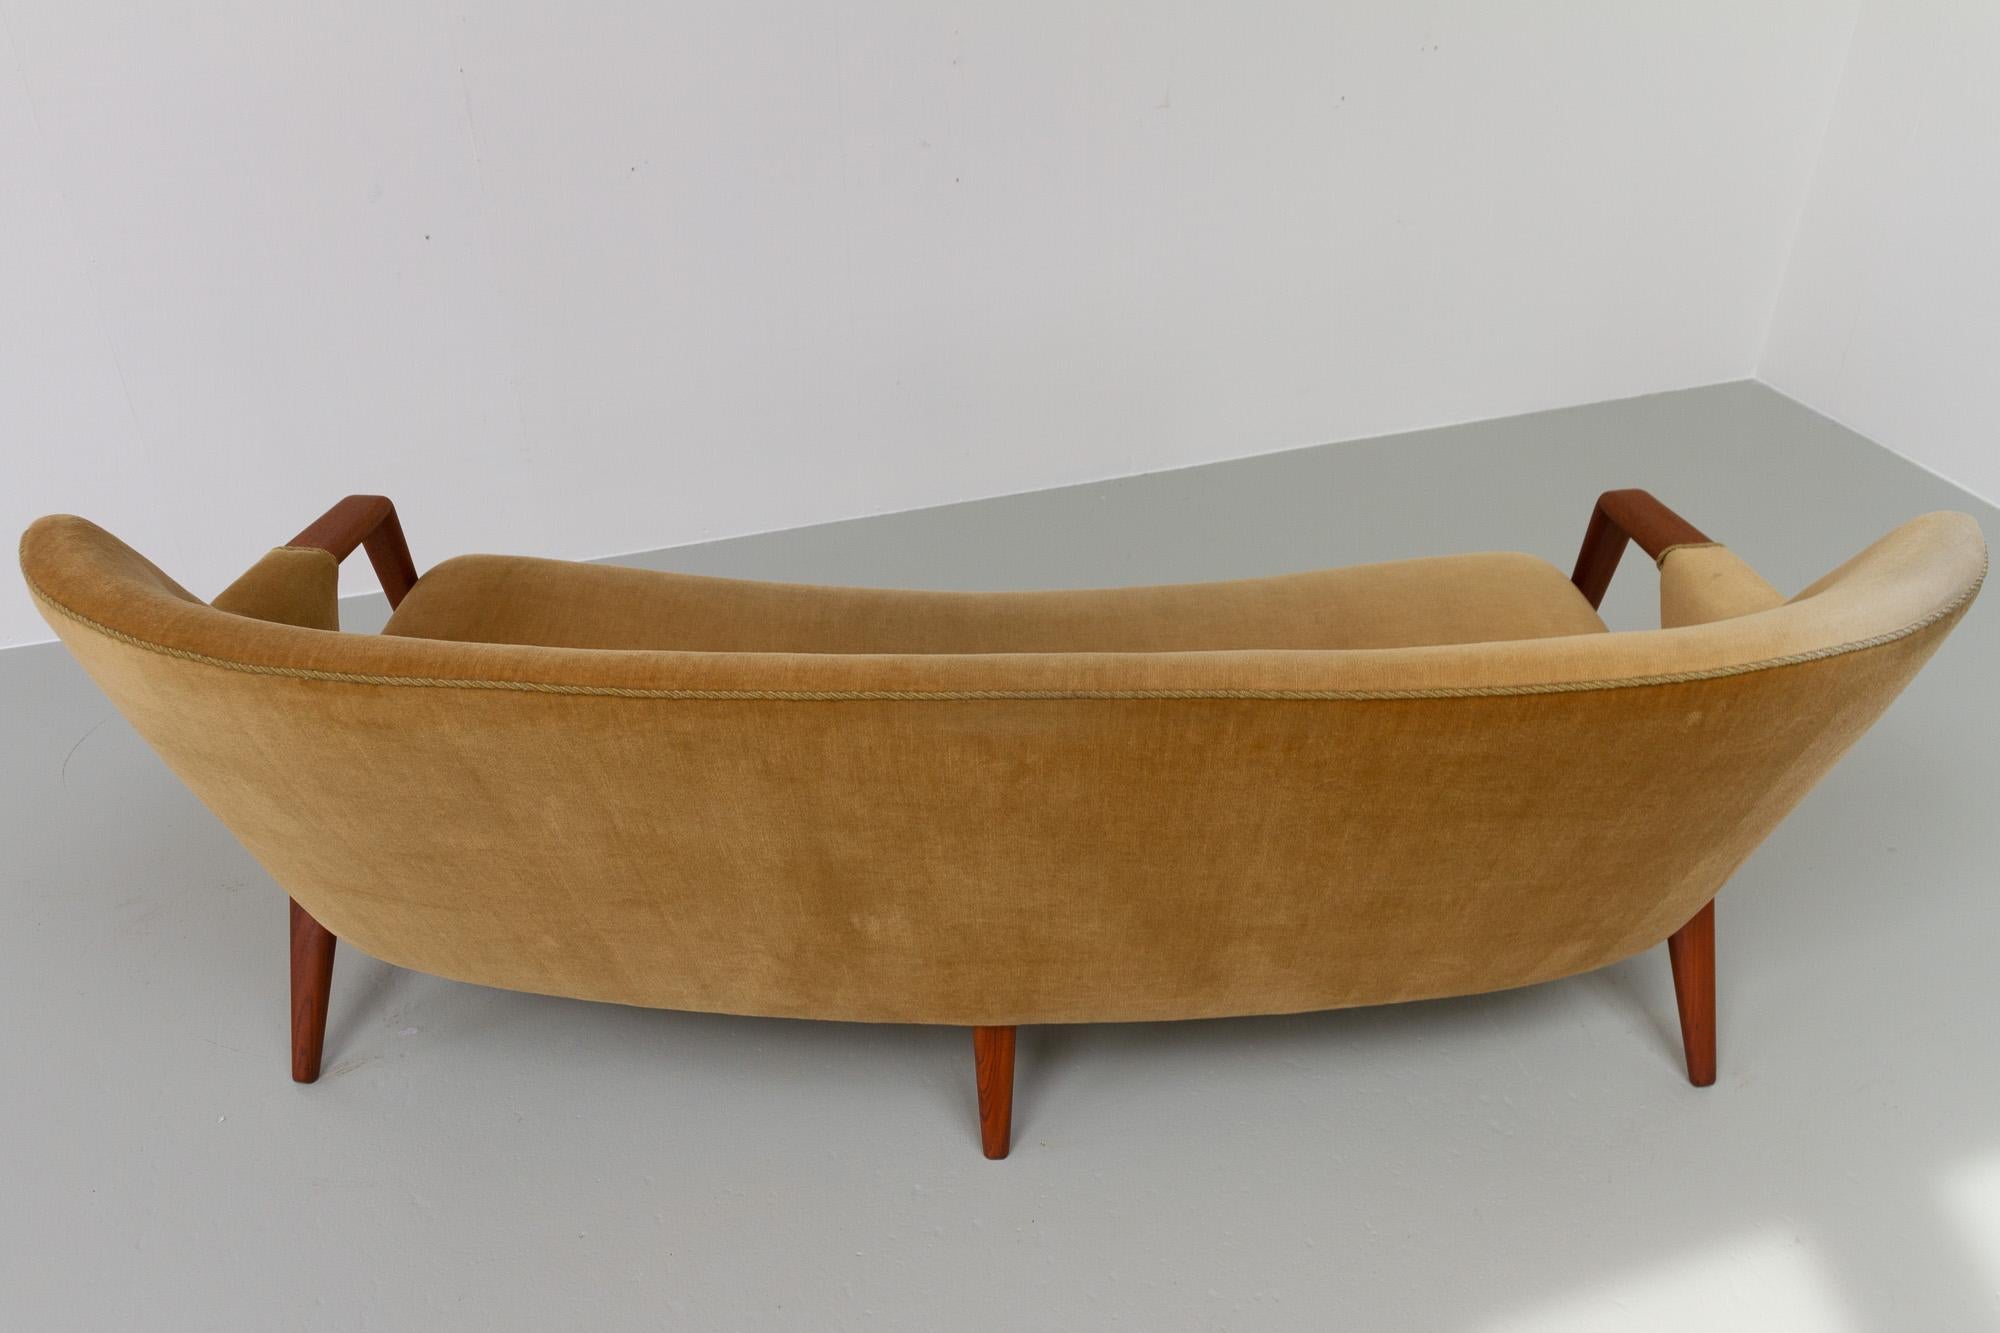 Danish Modern Banana Sofa and Chair by Kurt Olsen for Slagelse Møbelværk, 1950s For Sale 11